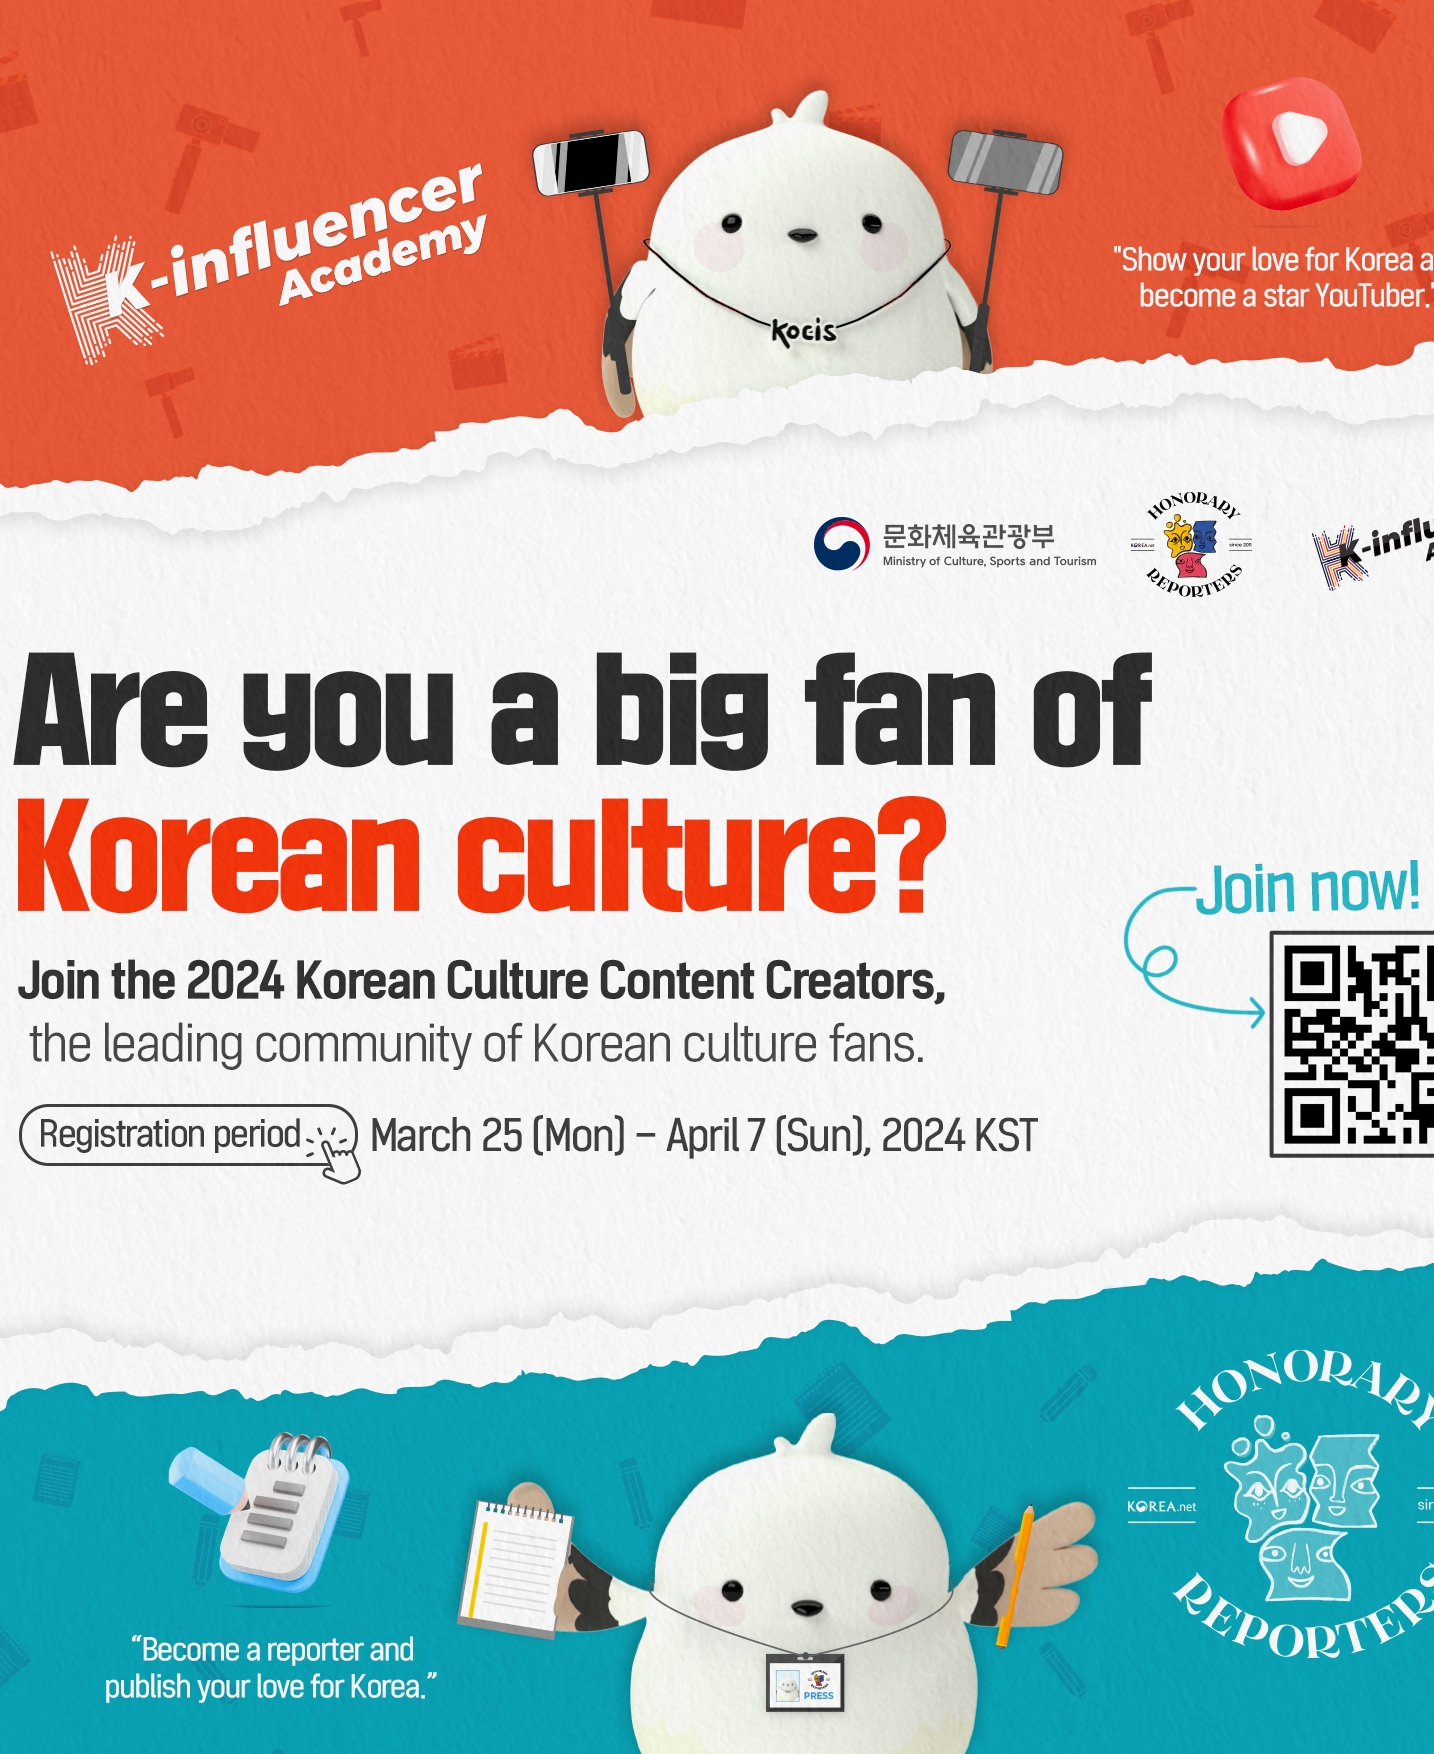 Werde Mitglied der ausländischen Botschafter für die koreanische Kultur 2024!